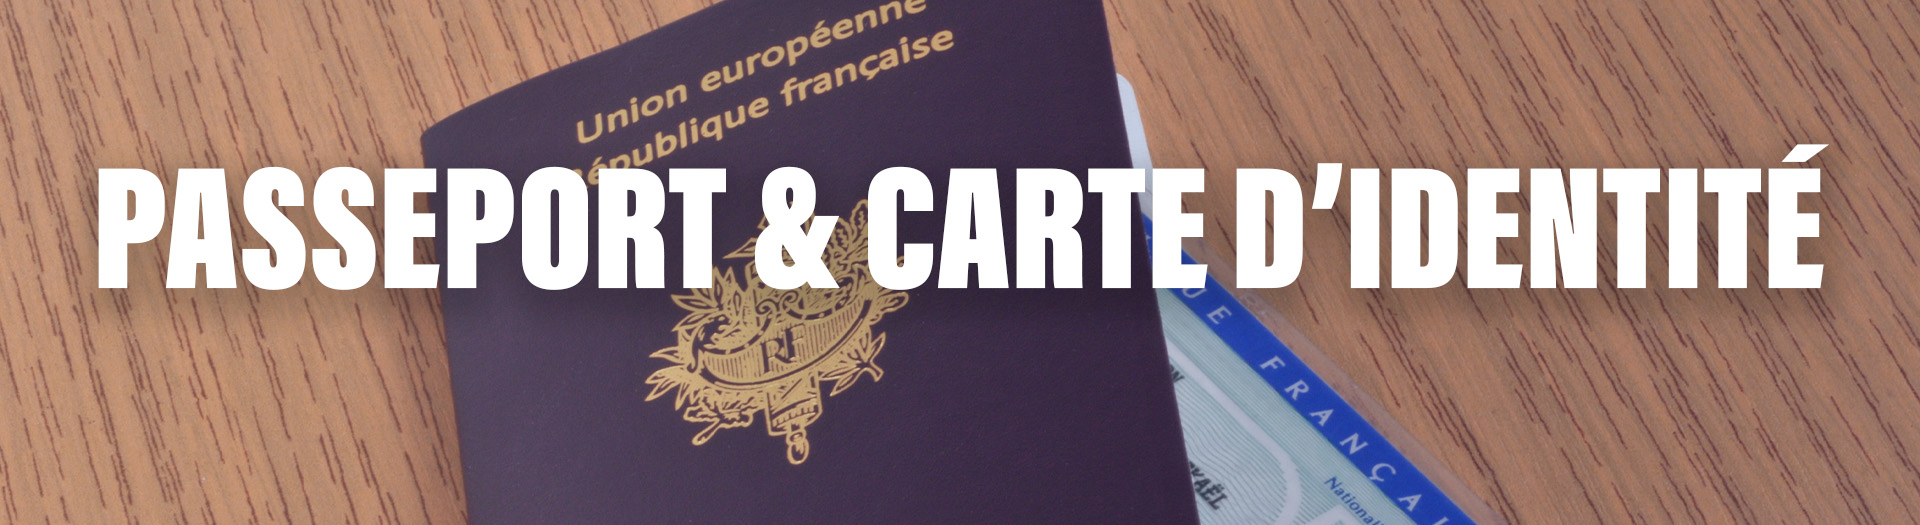 bannière sitemlm passeportcni